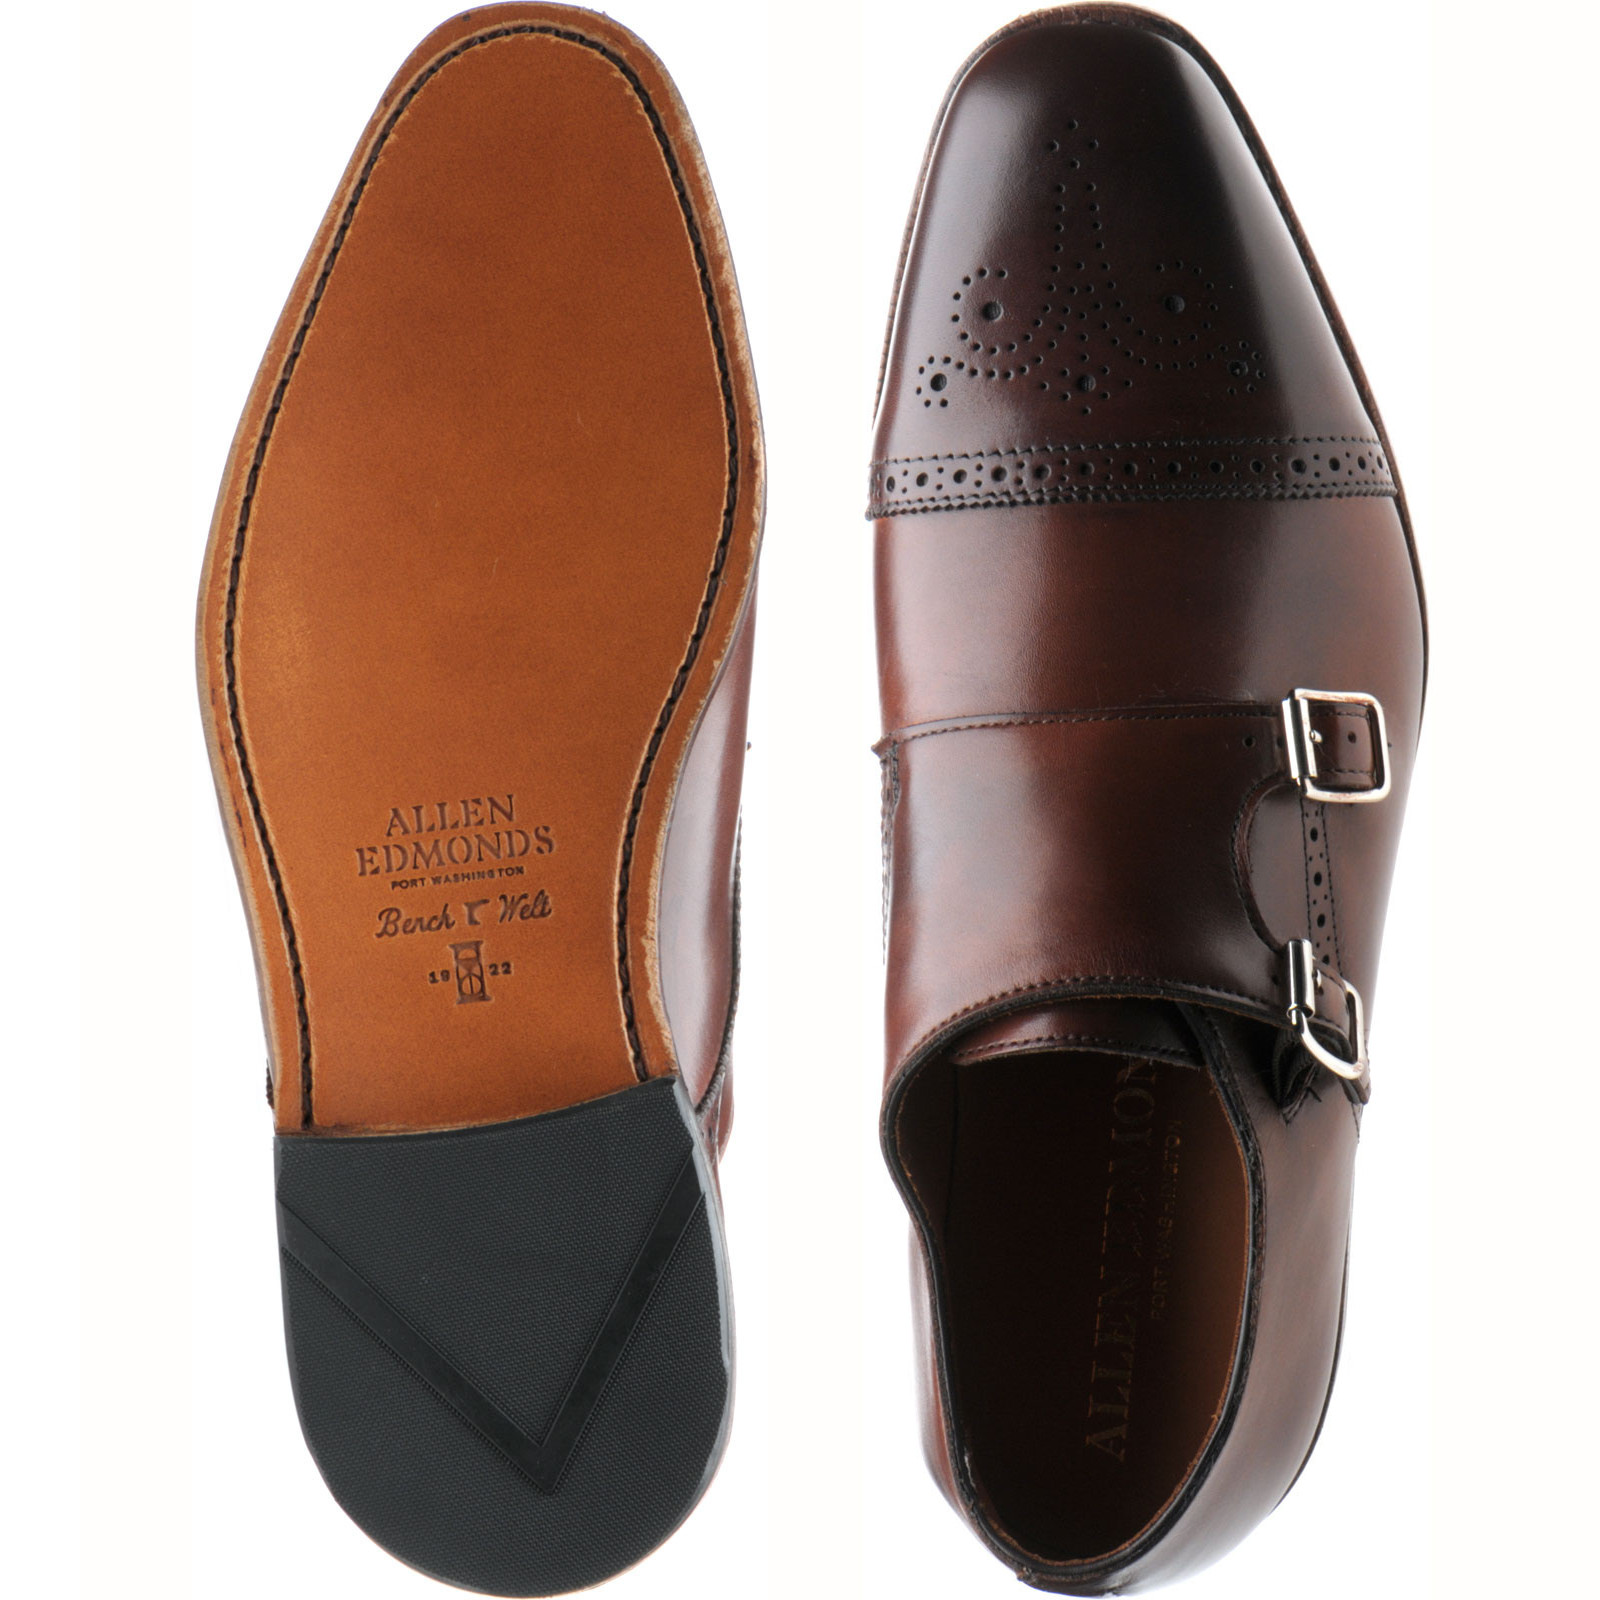 Allen Edmonds shoes | Allen Edmonds Sale | St John's double monk shoes ...